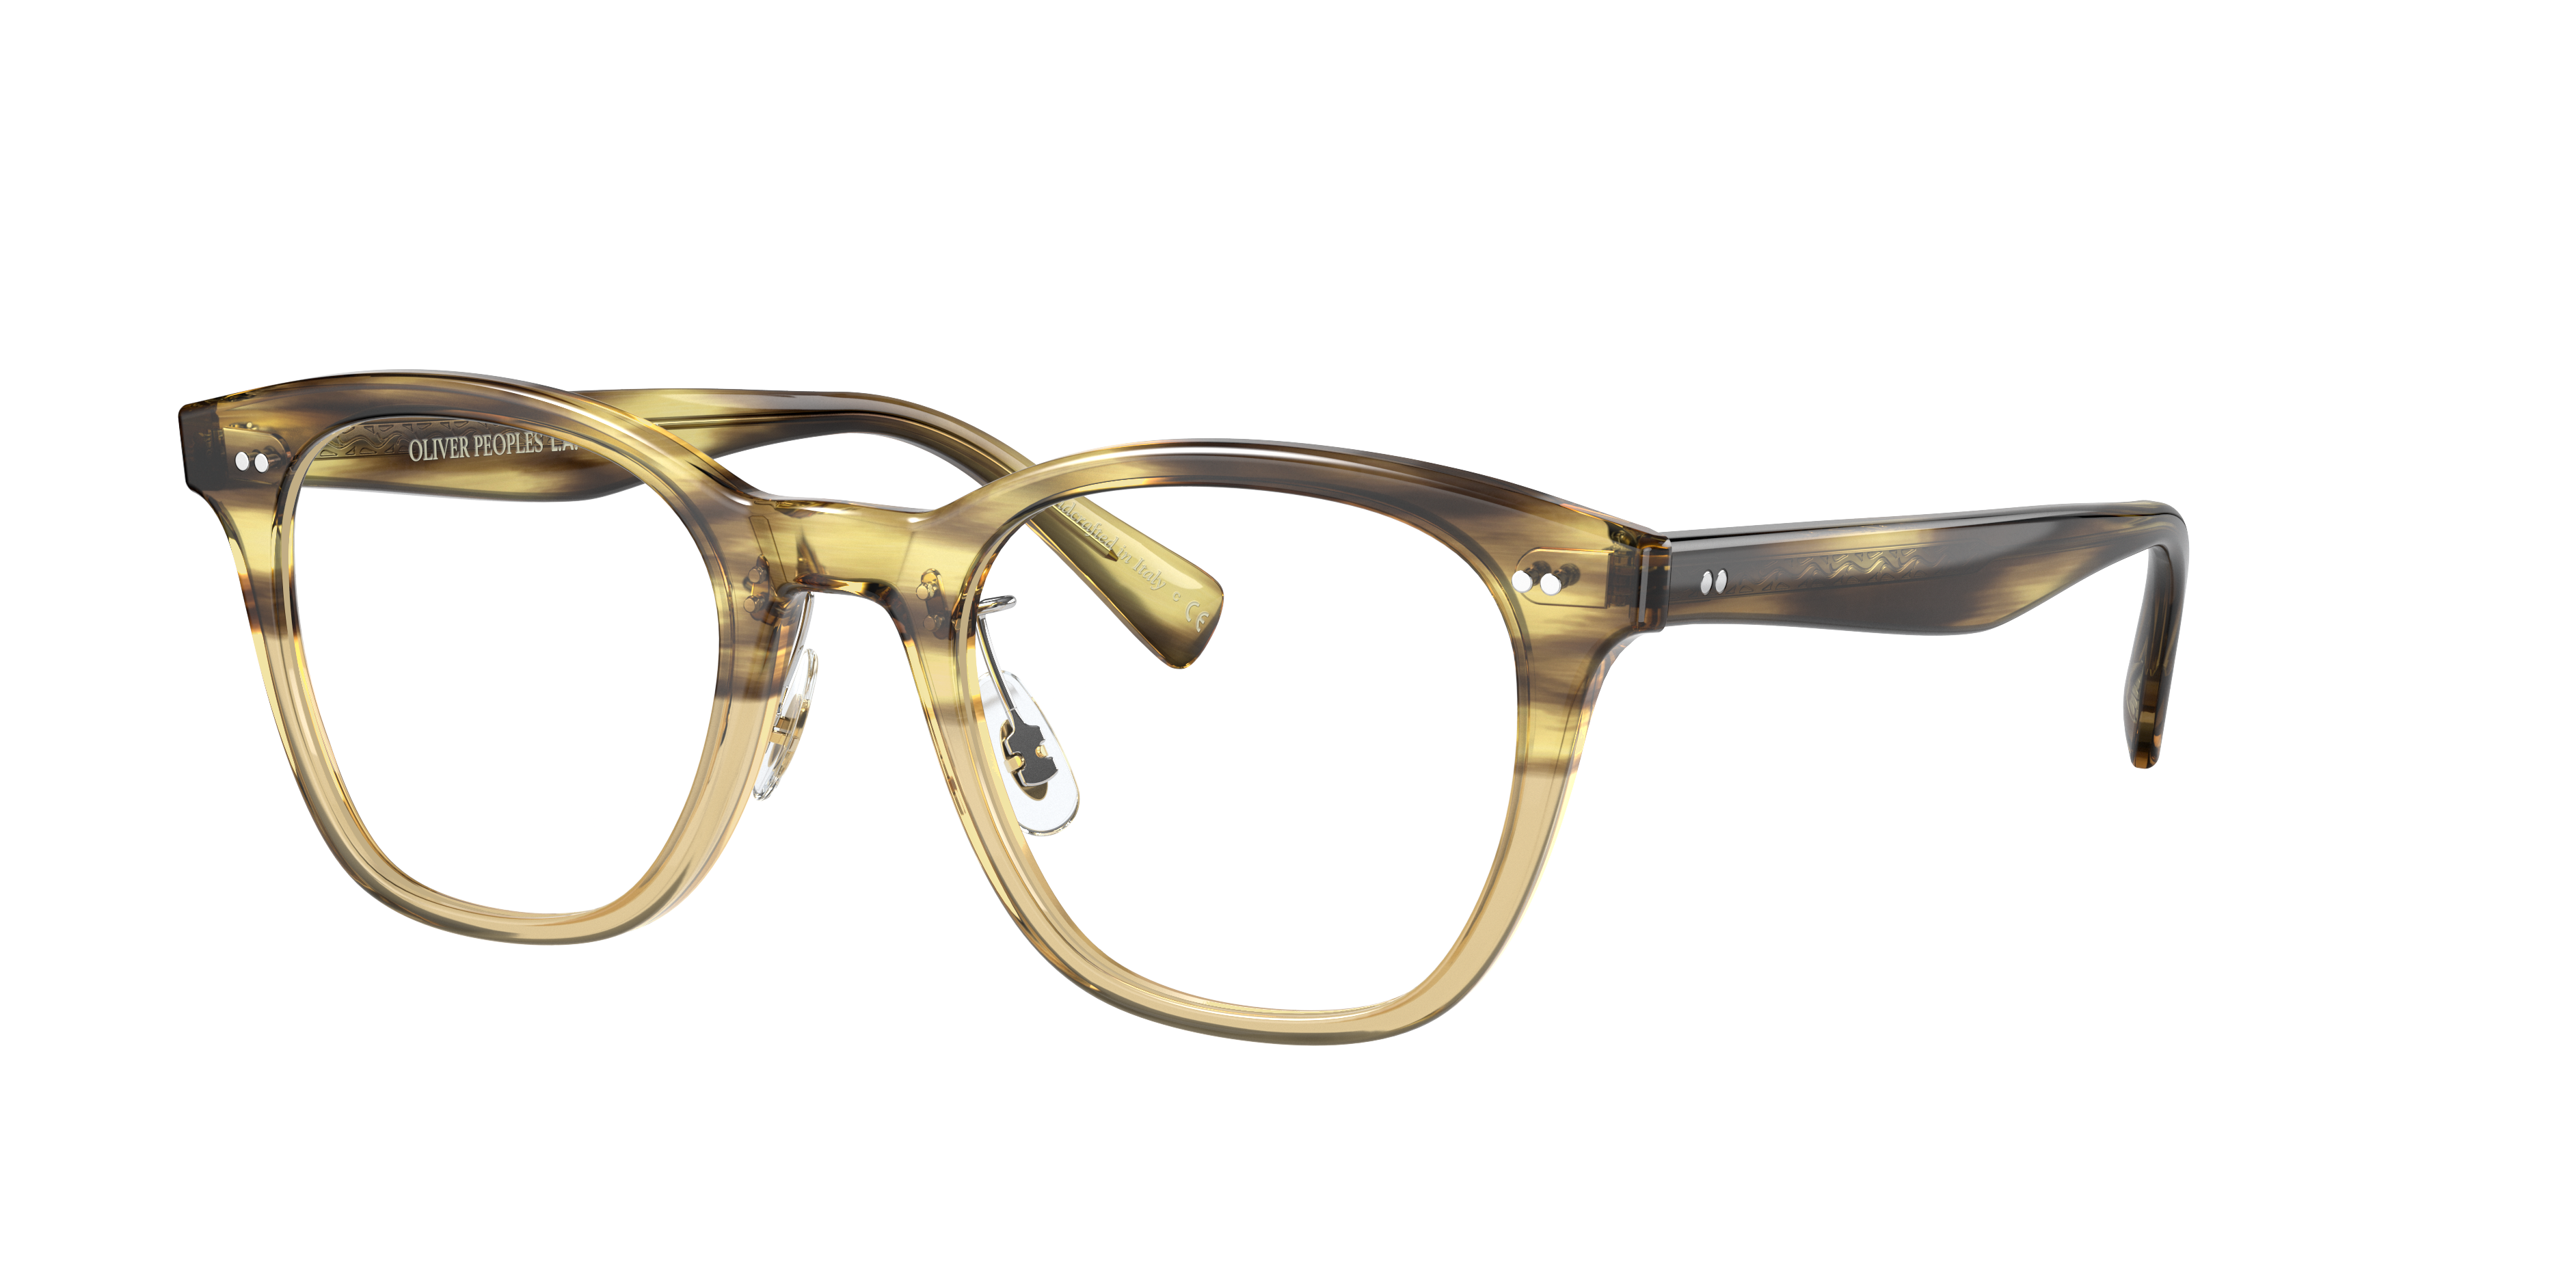 Eyeglasses OV5464F - Canarywood Gradient - Clear - アセテート